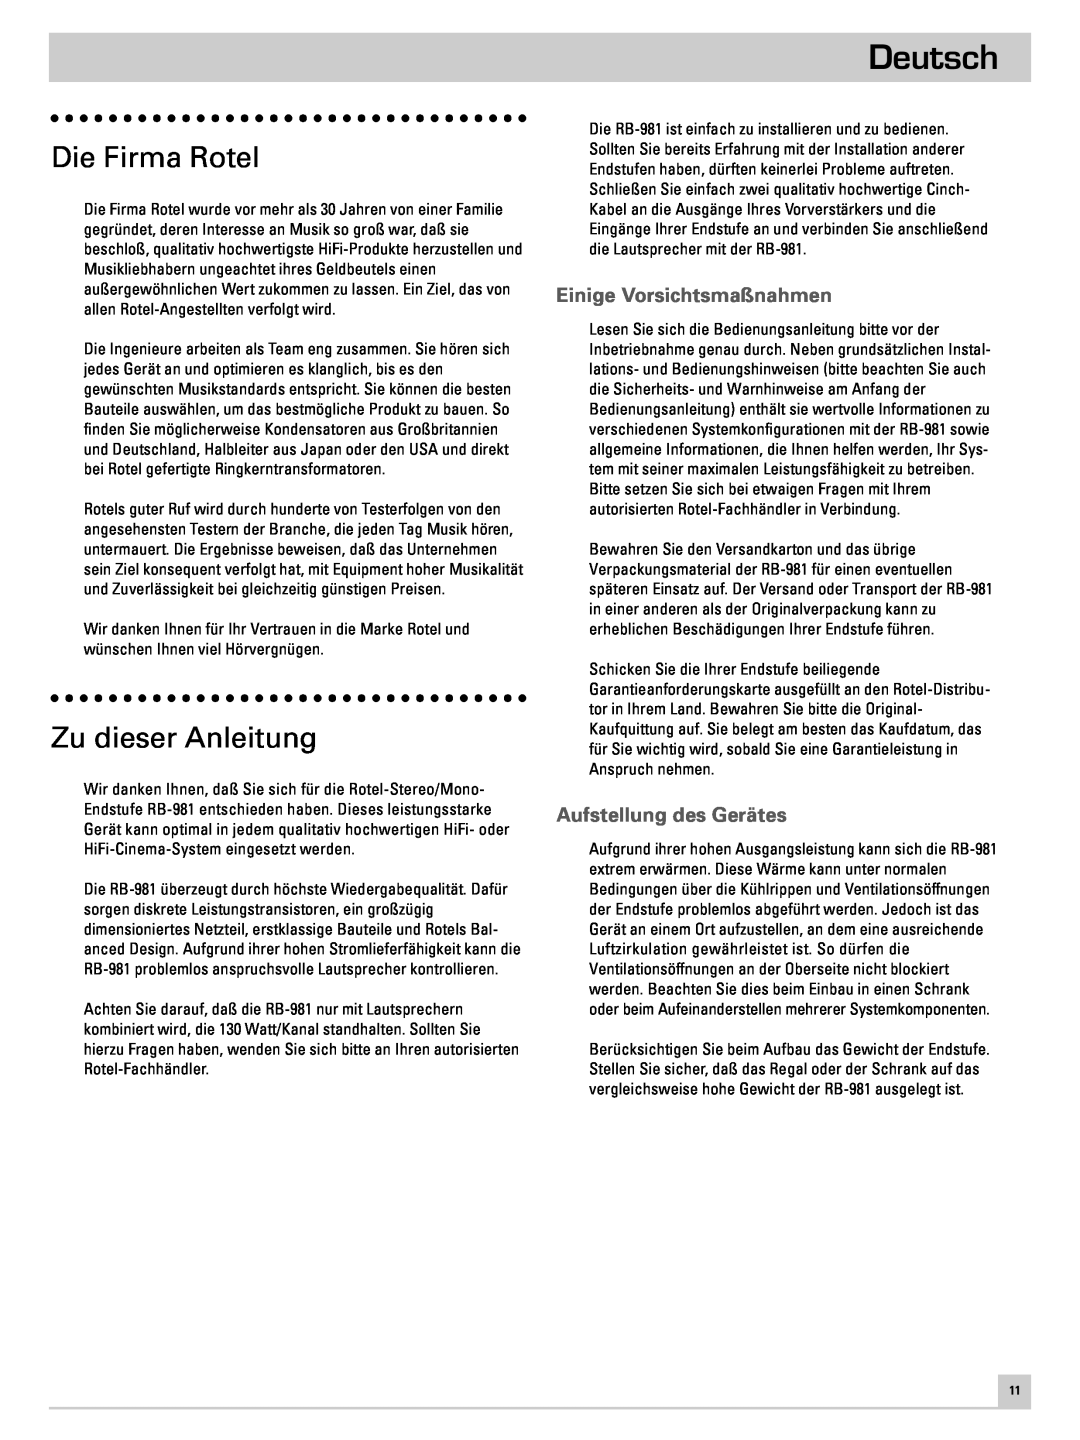 Rotel RB-981 owner manual Deutsch, Die Firma Rotel, Zu dieser Anleitung, Einige Vorsichtsmaßnahmen, Aufstellung des Gerätes 